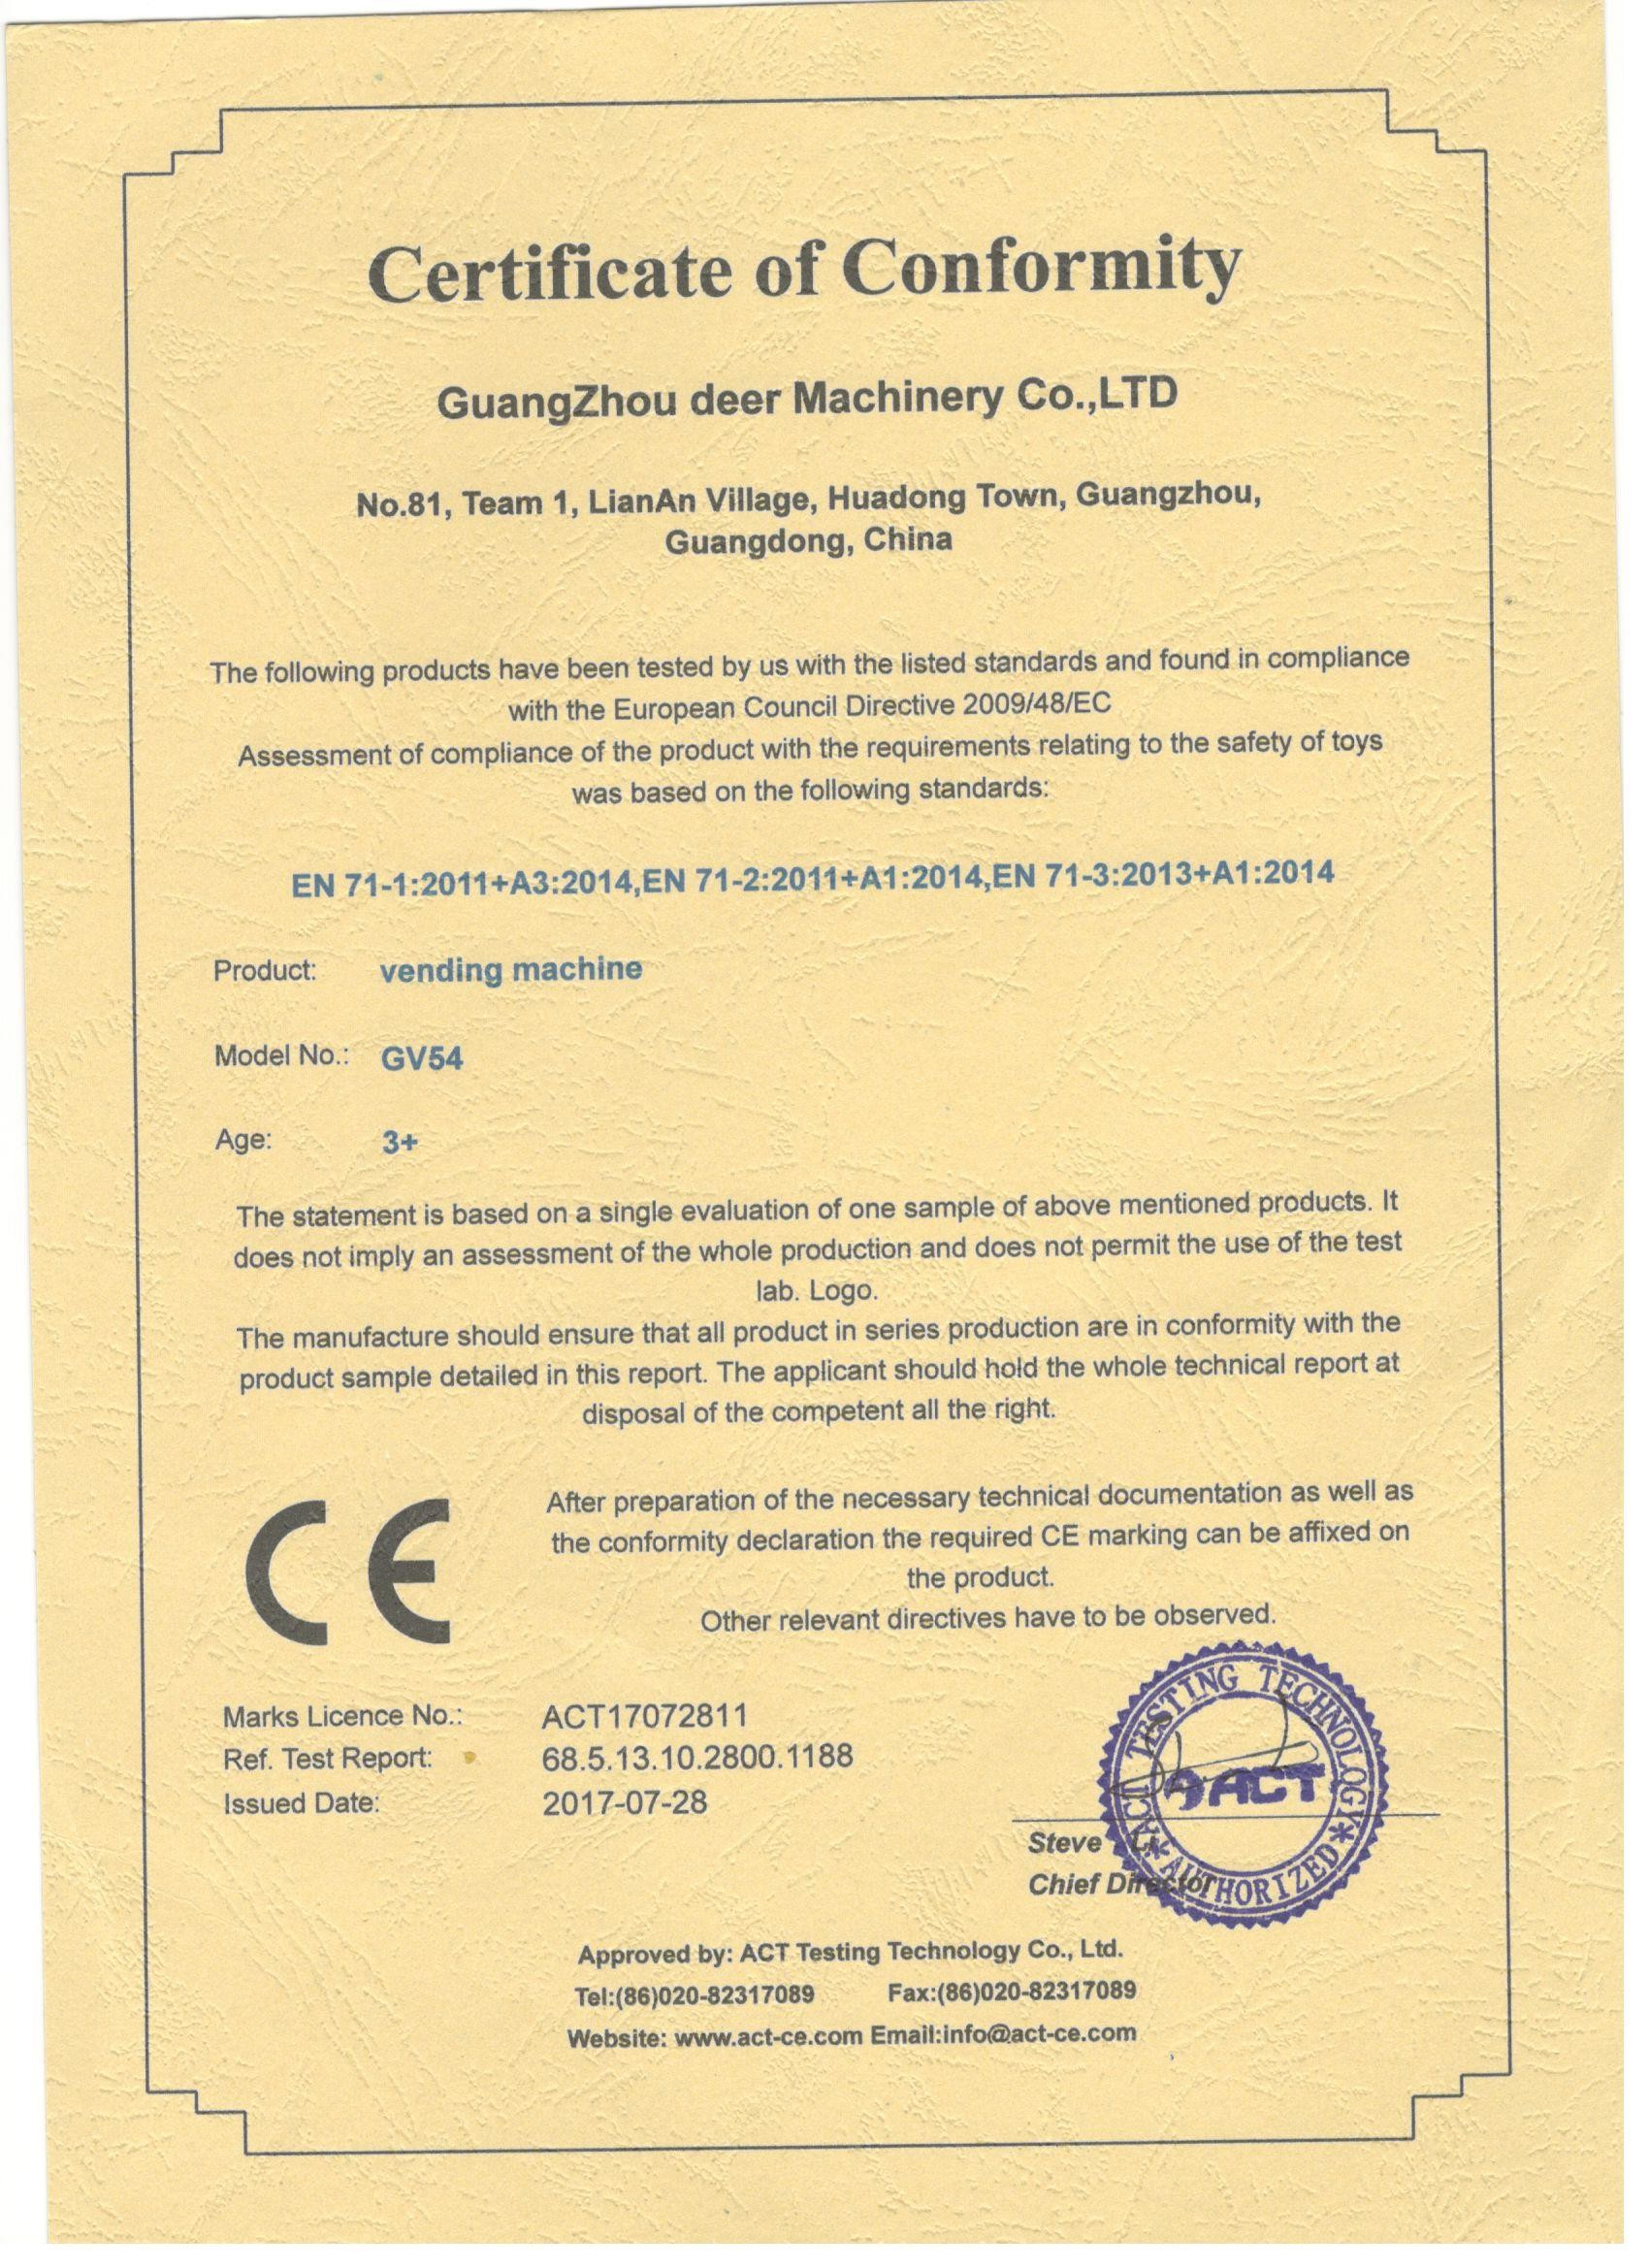 Chine Guangzhou Deer Machinery Co., Ltd. Certifications